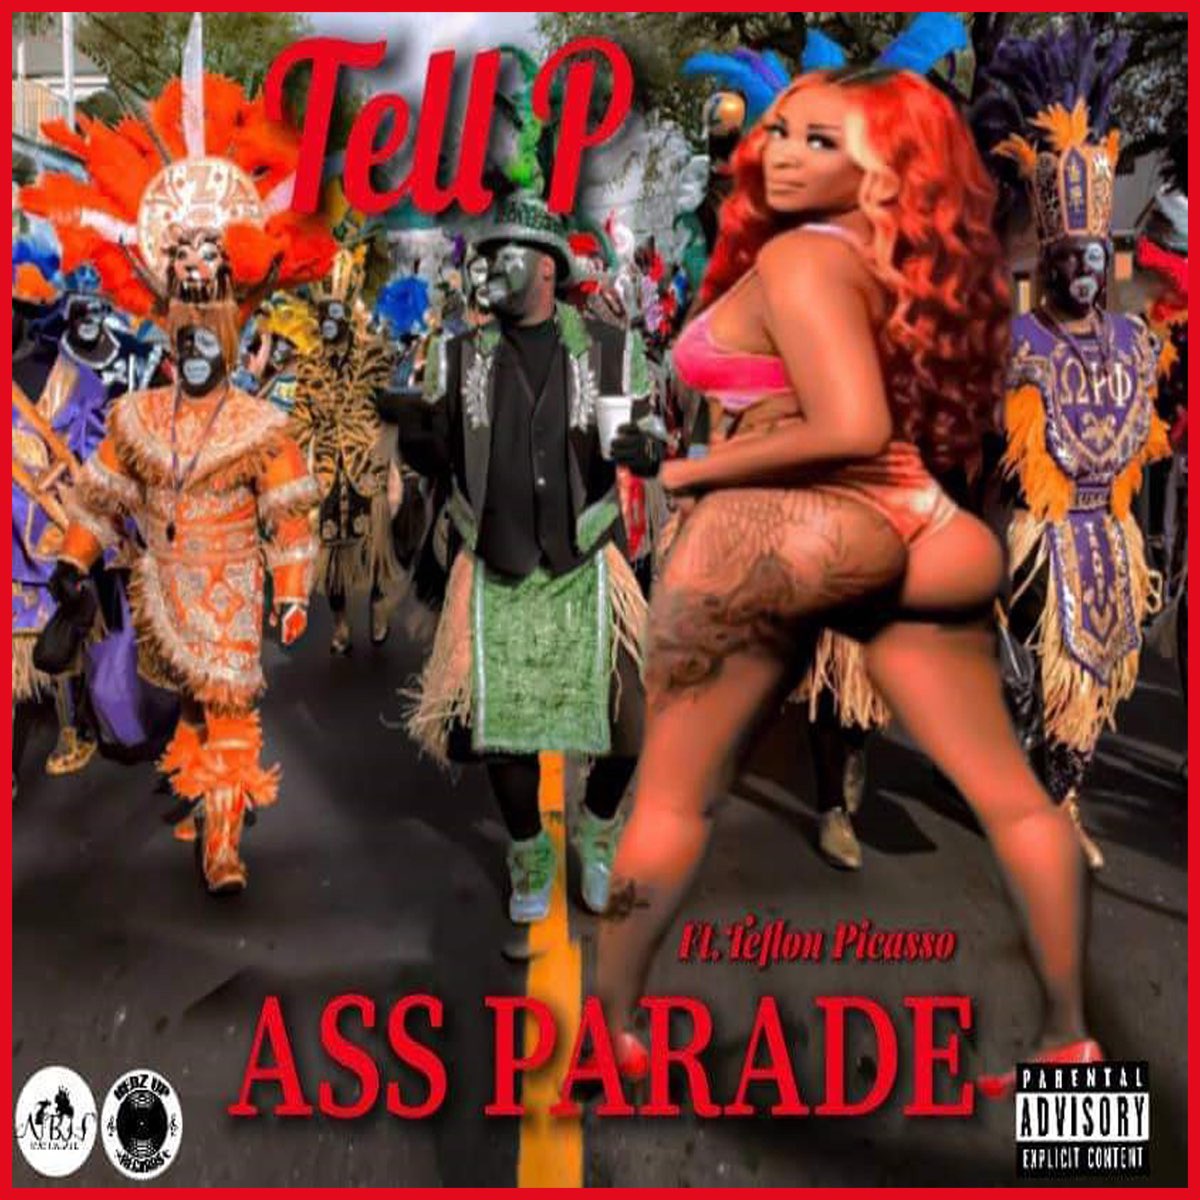 Ass parade